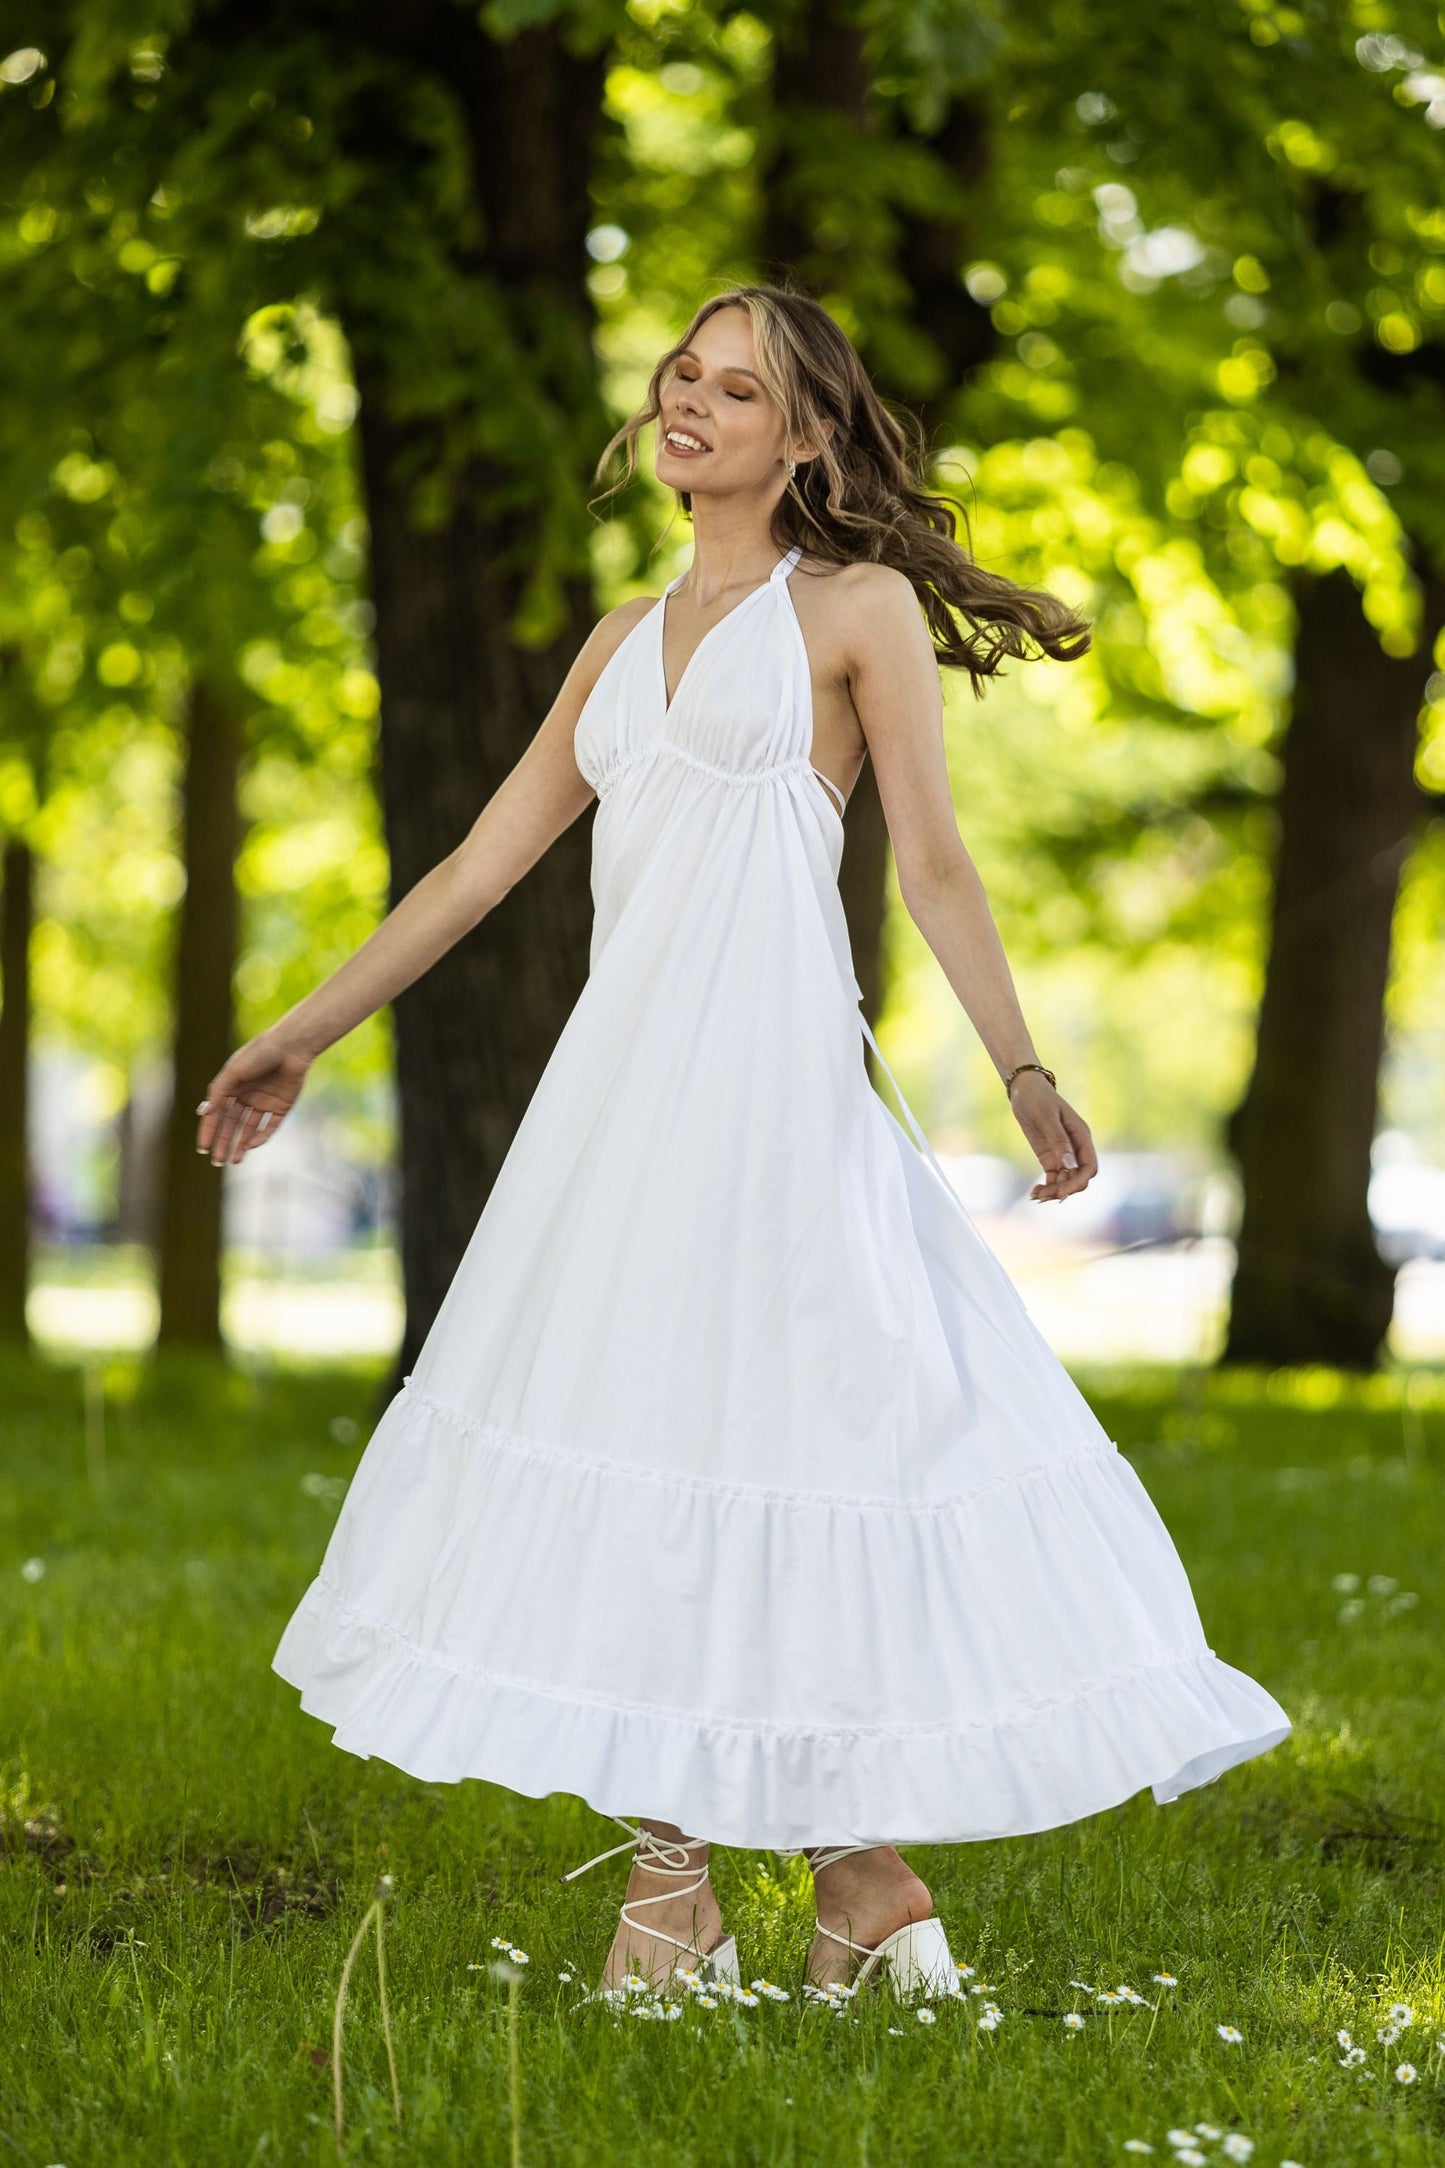 White Cotton dress with narrow straps